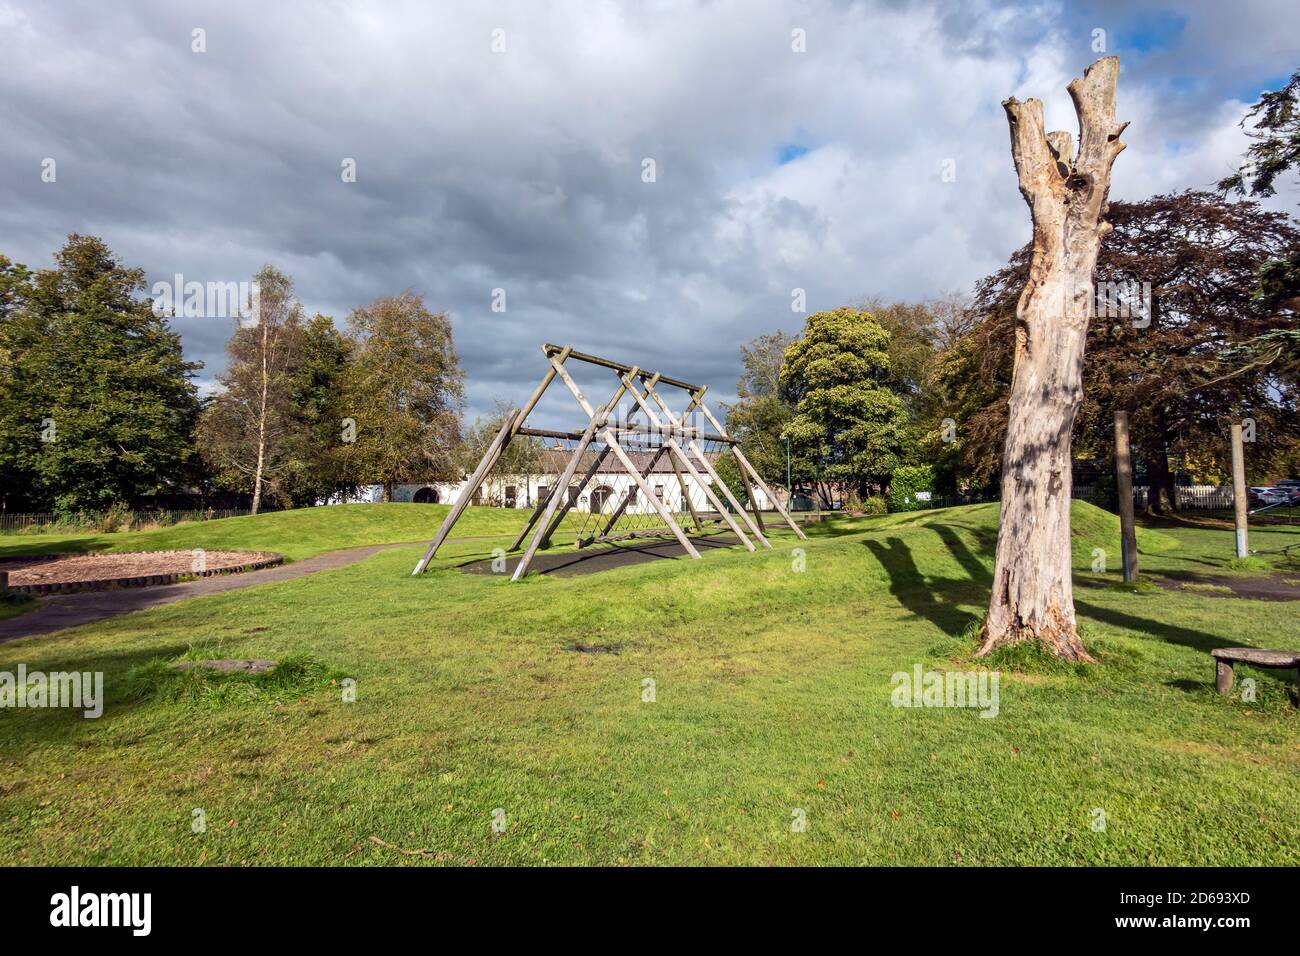 Aire de jeux avec équipement au parc national de Polkemmet près de Whitburn West Lothian Ecosse Royaume-Uni Banque D'Images